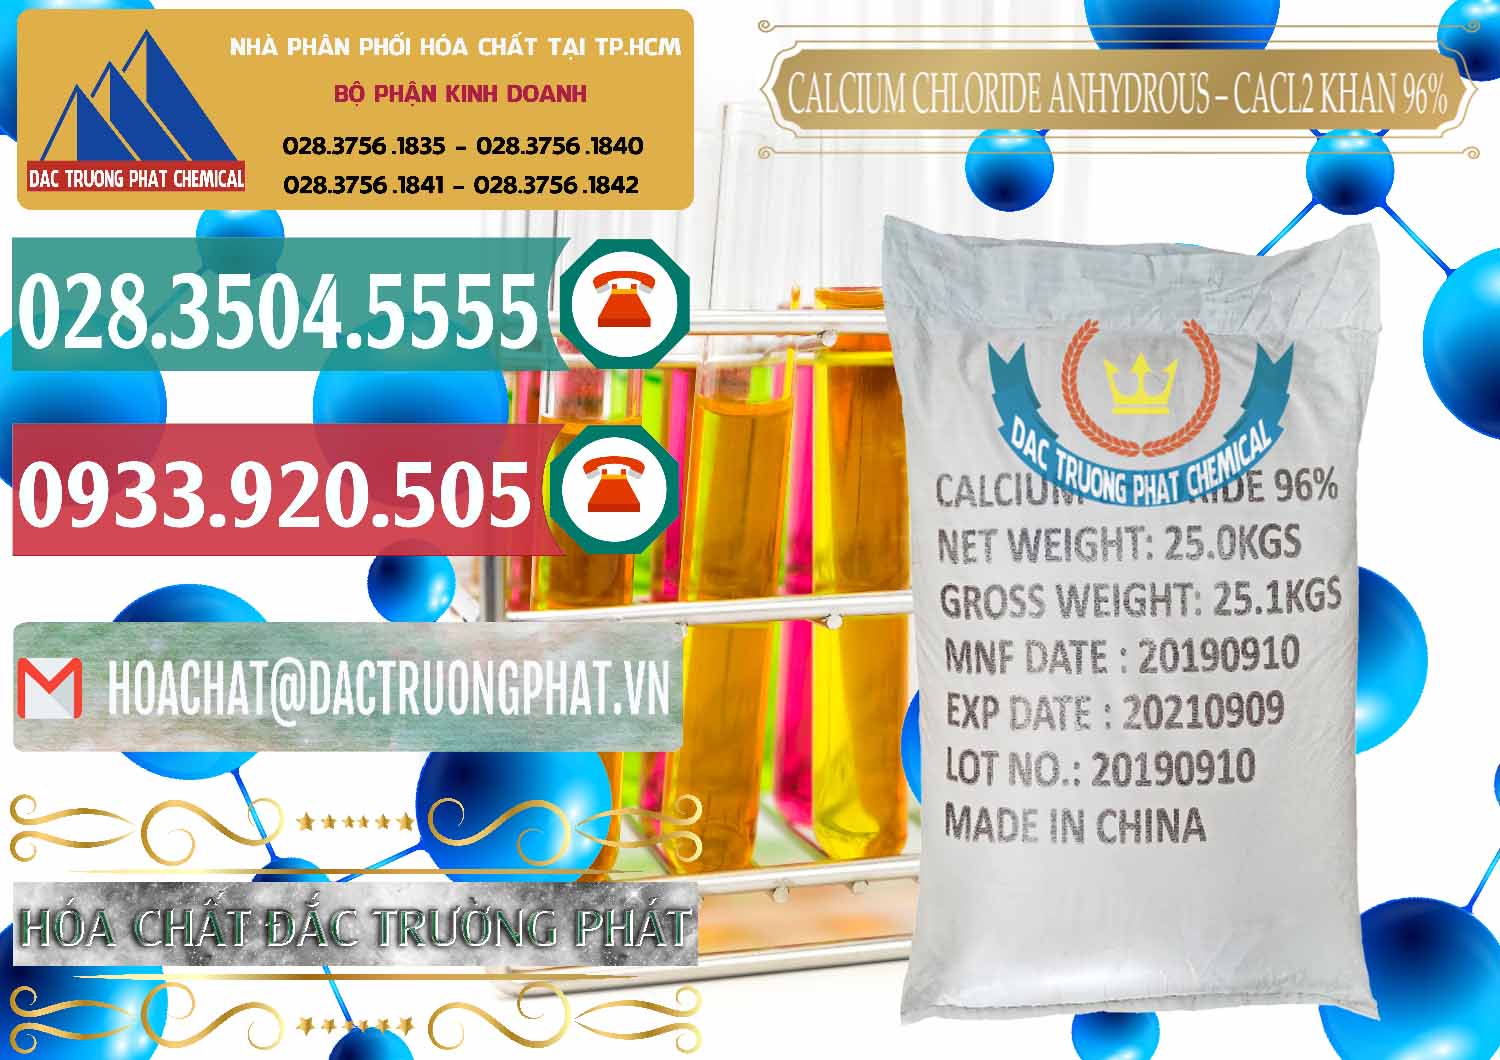 Chuyên bán & cung cấp CaCl2 – Canxi Clorua Anhydrous Khan 96% Trung Quốc China - 0043 - Cty nhập khẩu và phân phối hóa chất tại TP.HCM - muabanhoachat.vn